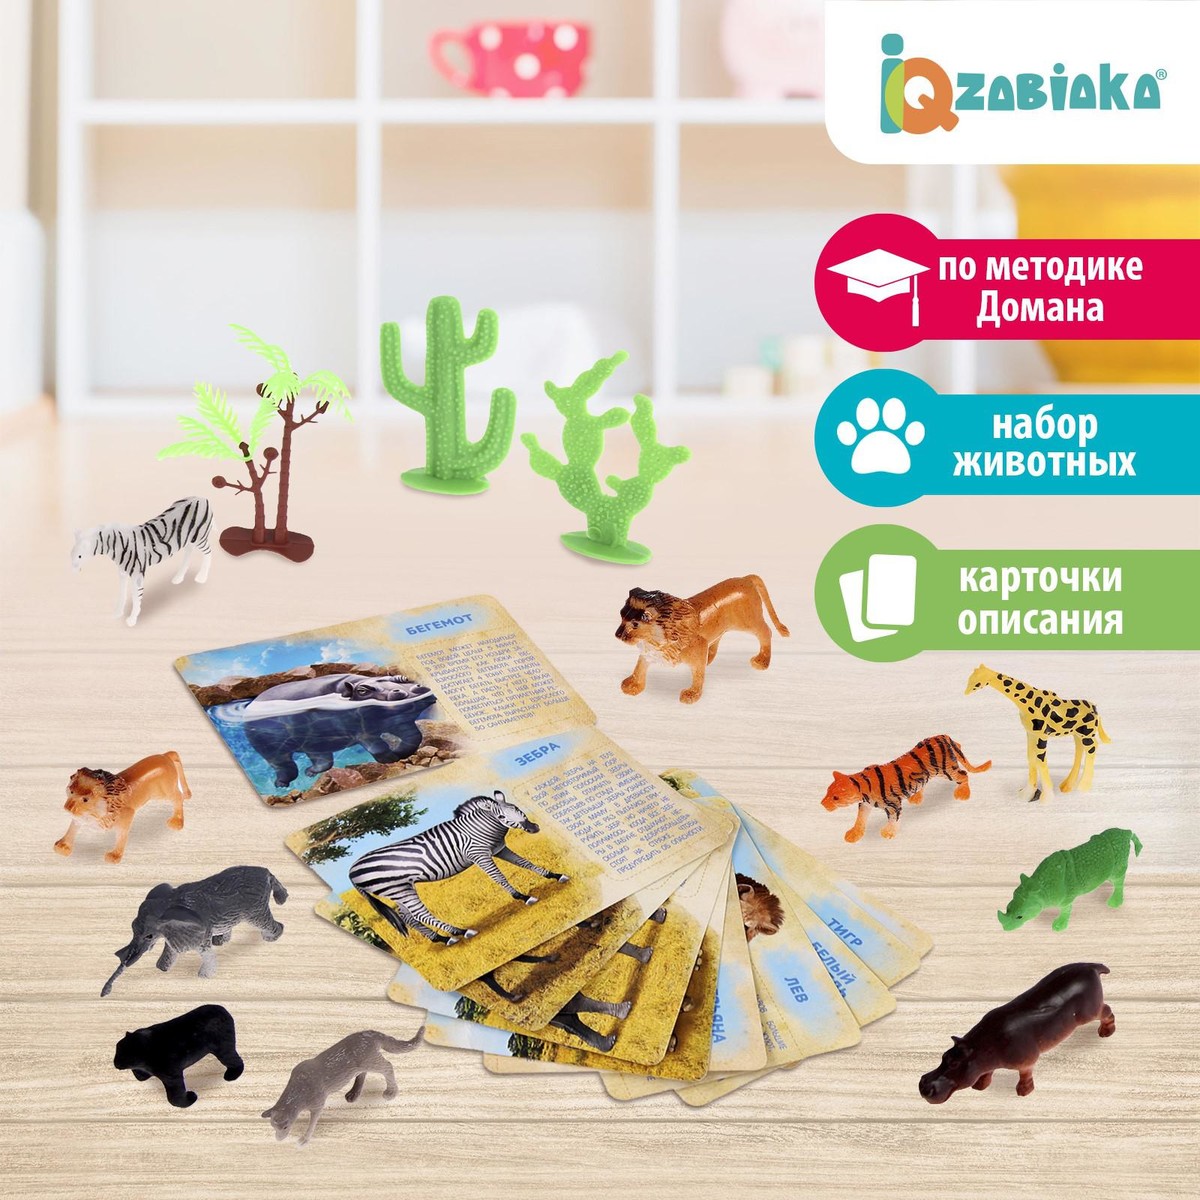 Набор животных с обучающими карточками набор фигурок животных для детей с обучающими карточками